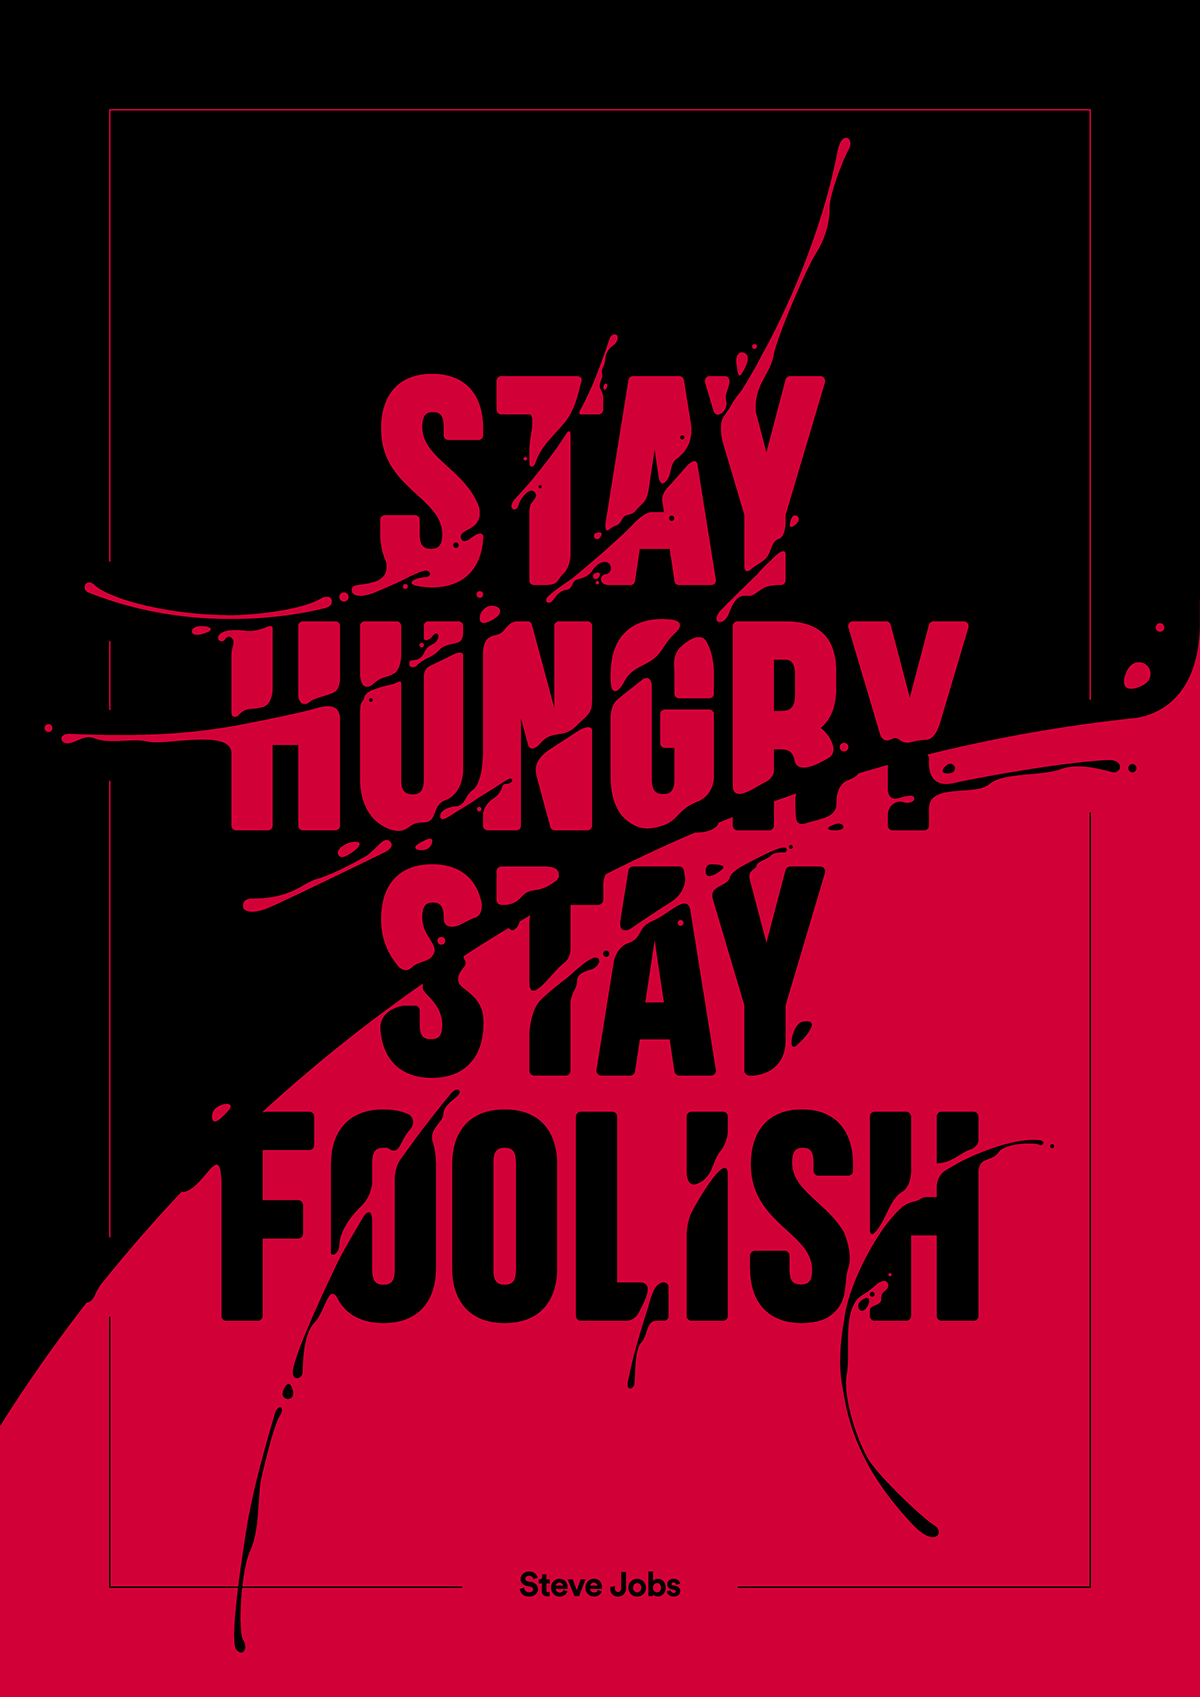 typography   Steve Jobs quote poster art vector